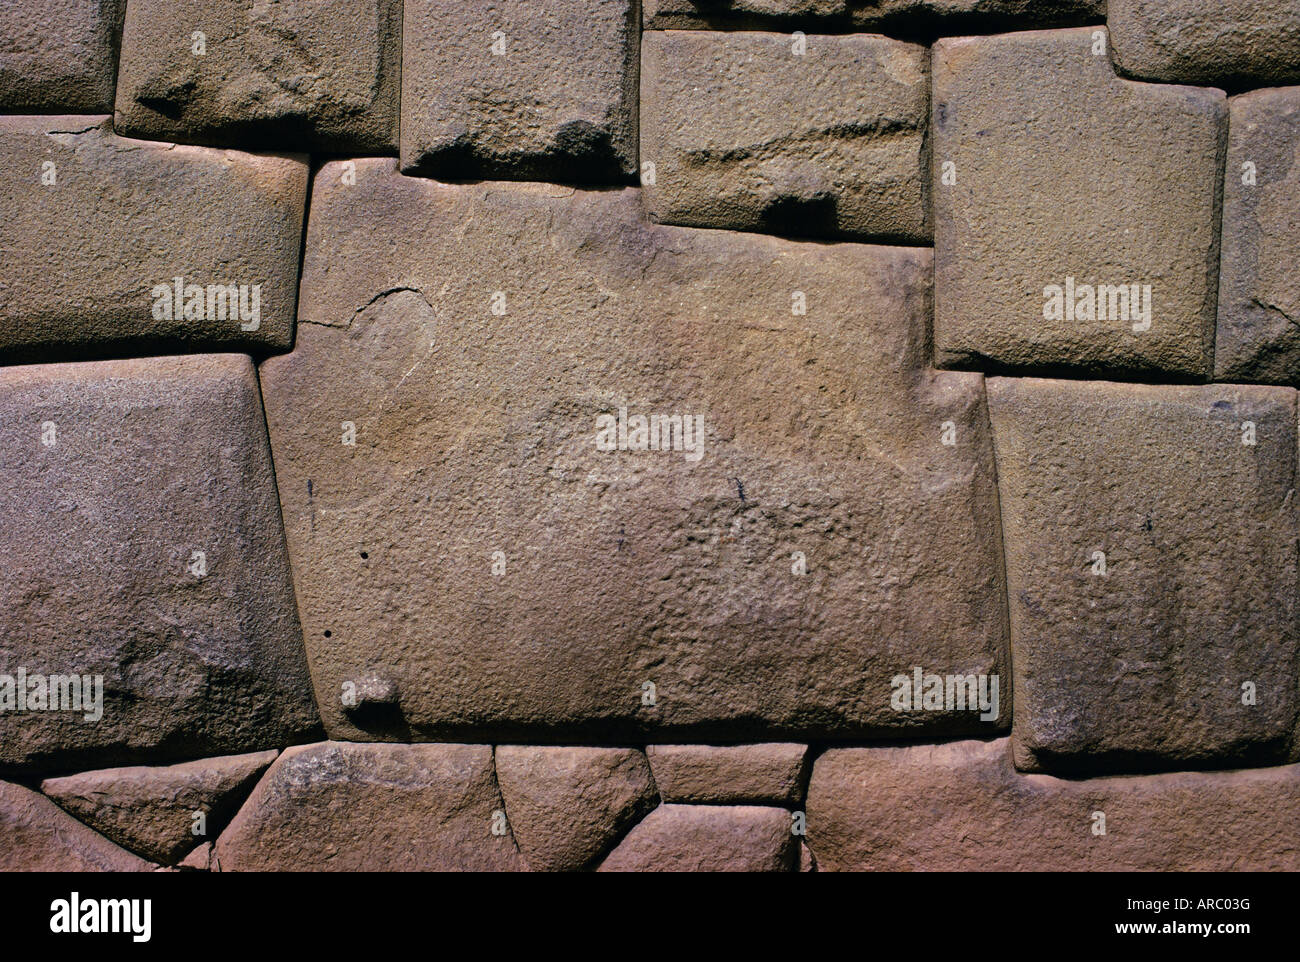 La pierre des Douze angles, le Palais de l'Inca de Hatunrumiyoc, Cuzco, Pérou Banque D'Images